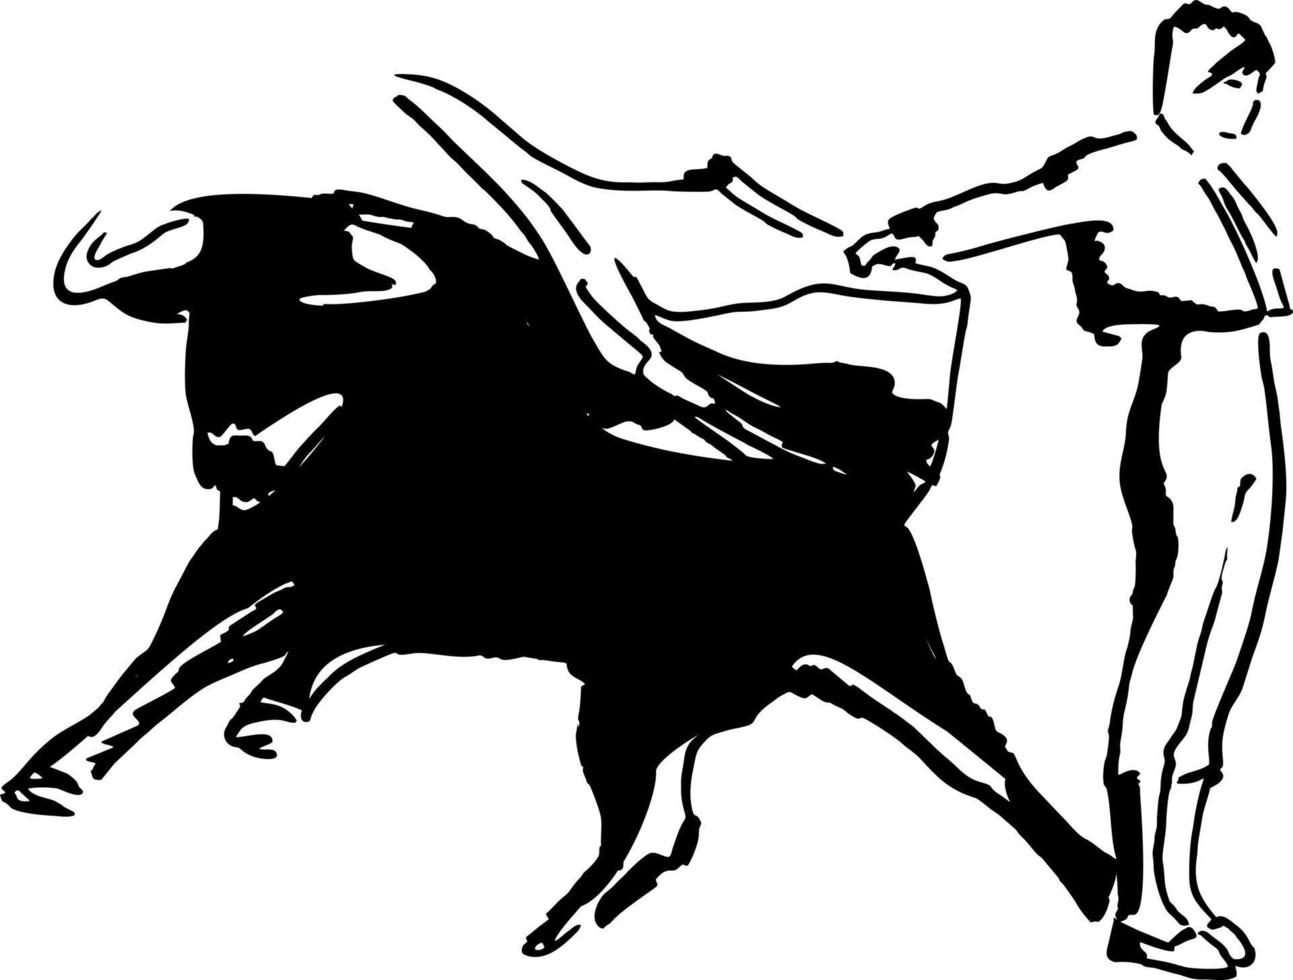 Korridor, Stierkampf im Spanien. Matador, Stierkämpfer, Stier Streit. Hand gezeichnet Tinte skizzieren. Vektor Illustration